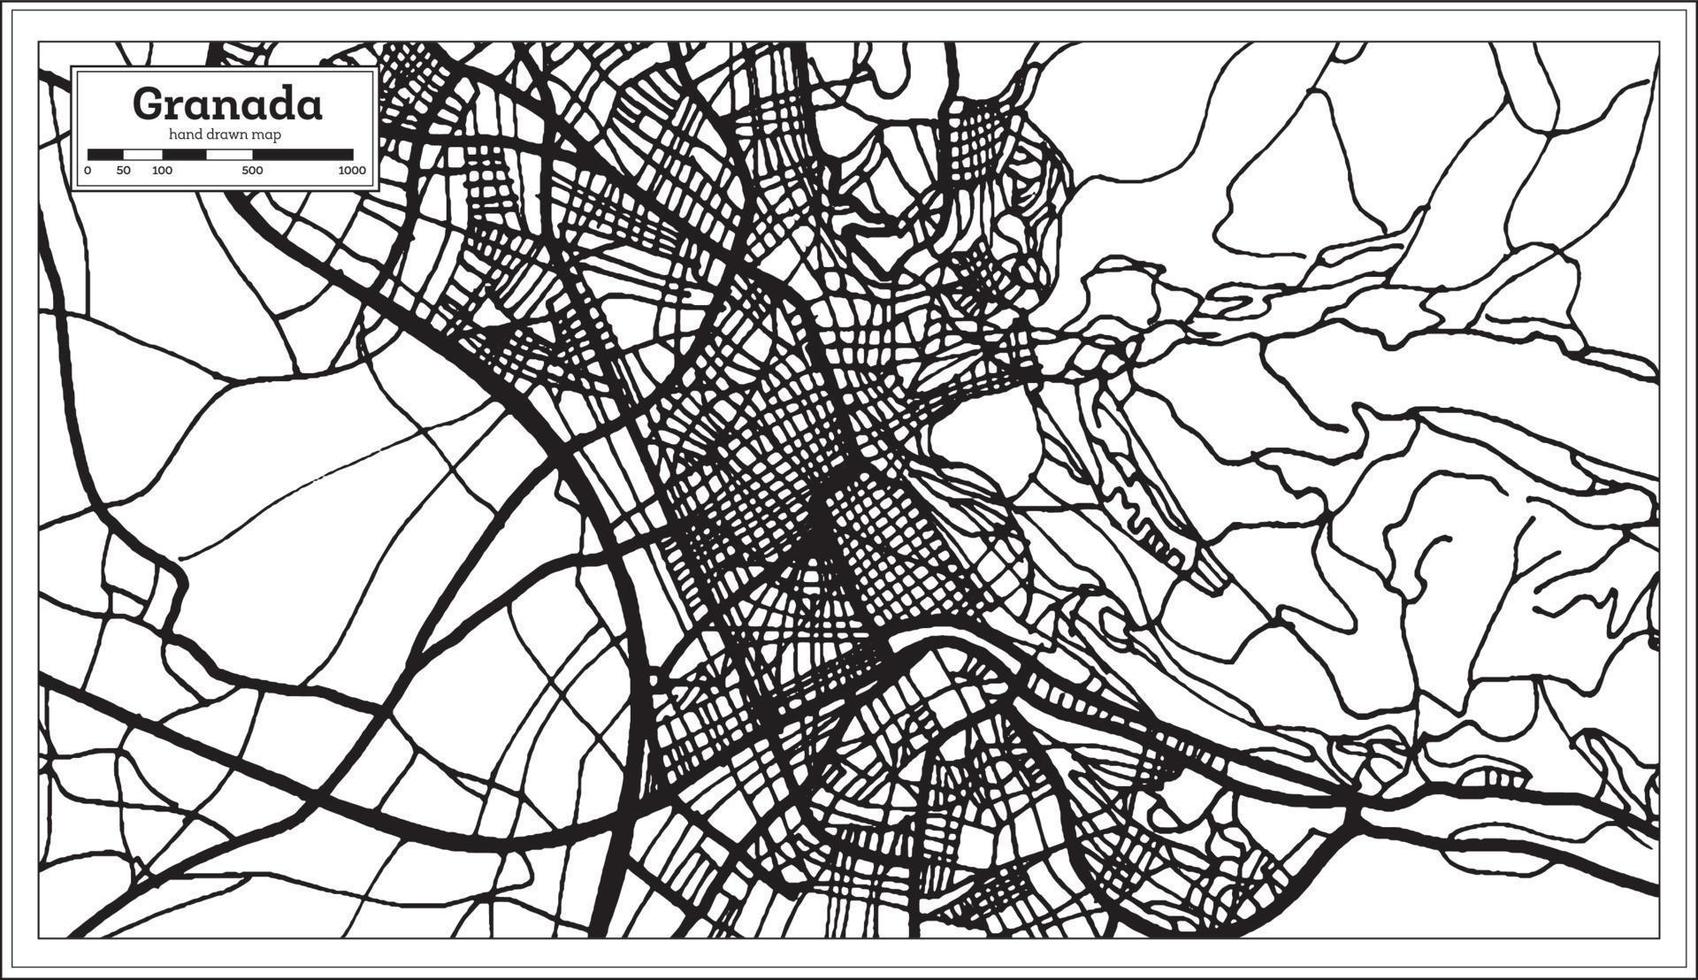 carte de la ville de grenade espagne dans un style rétro. carte muette. vecteur